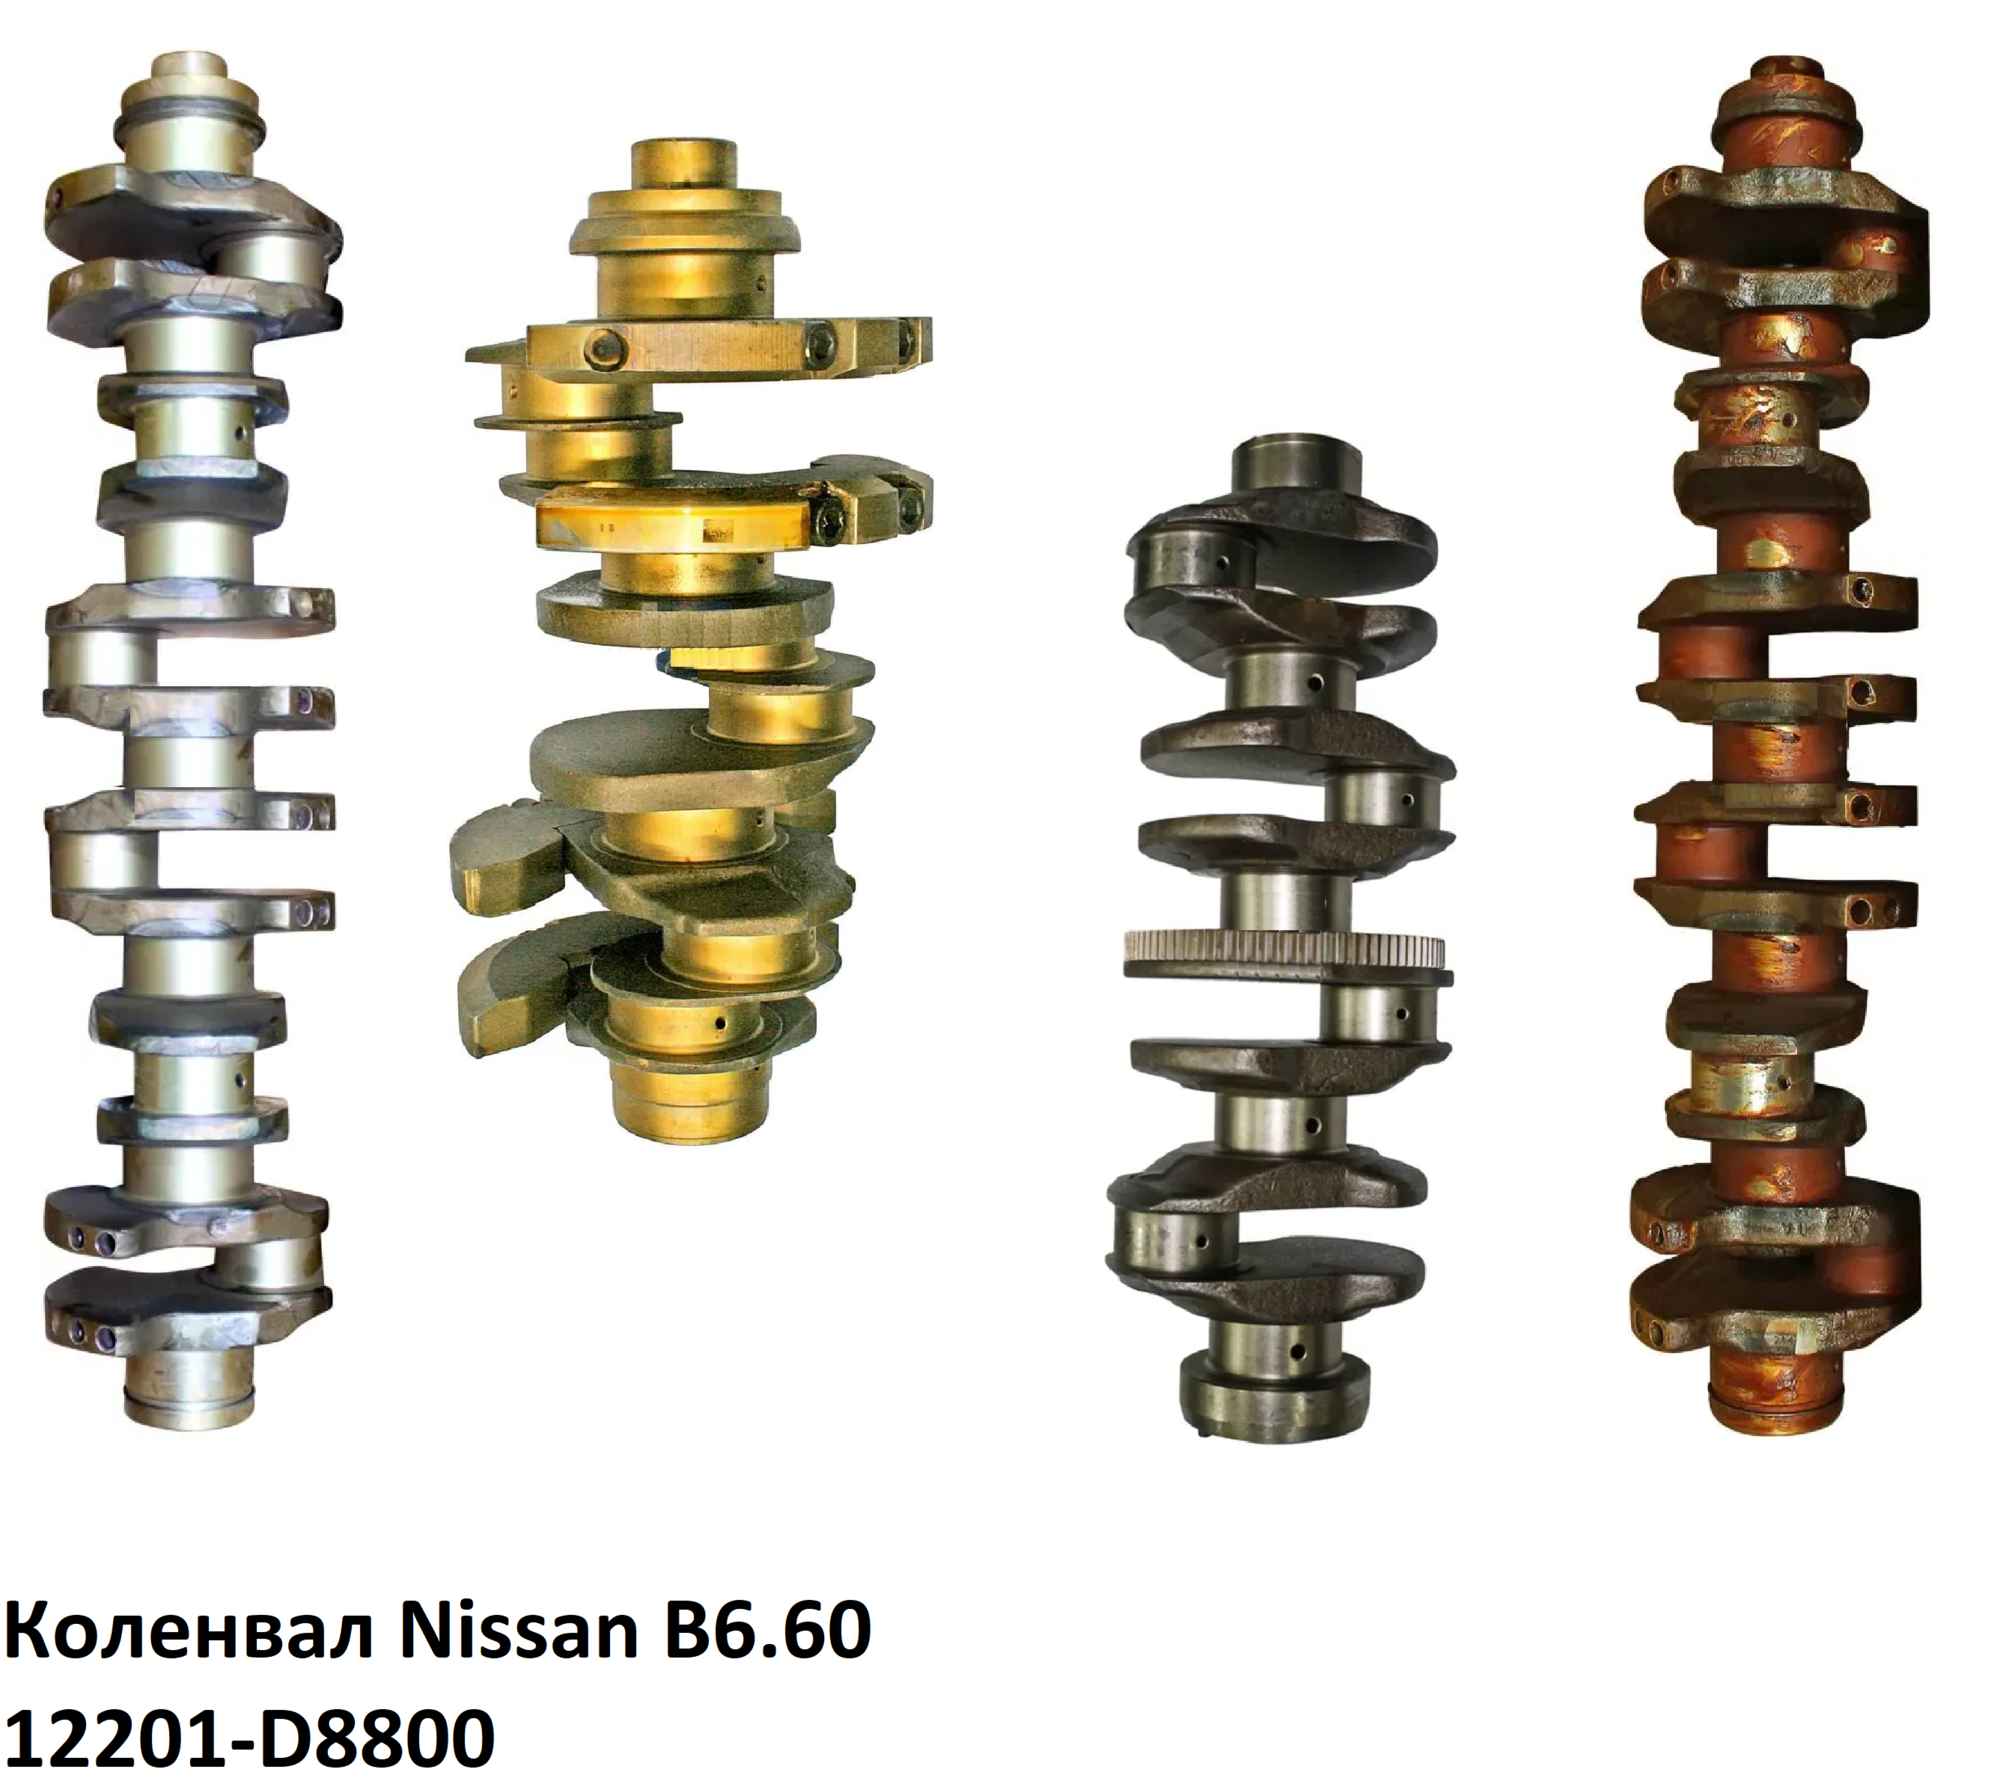 Коленвал Nissan B6.60, 12201-D8800, 12201d8800